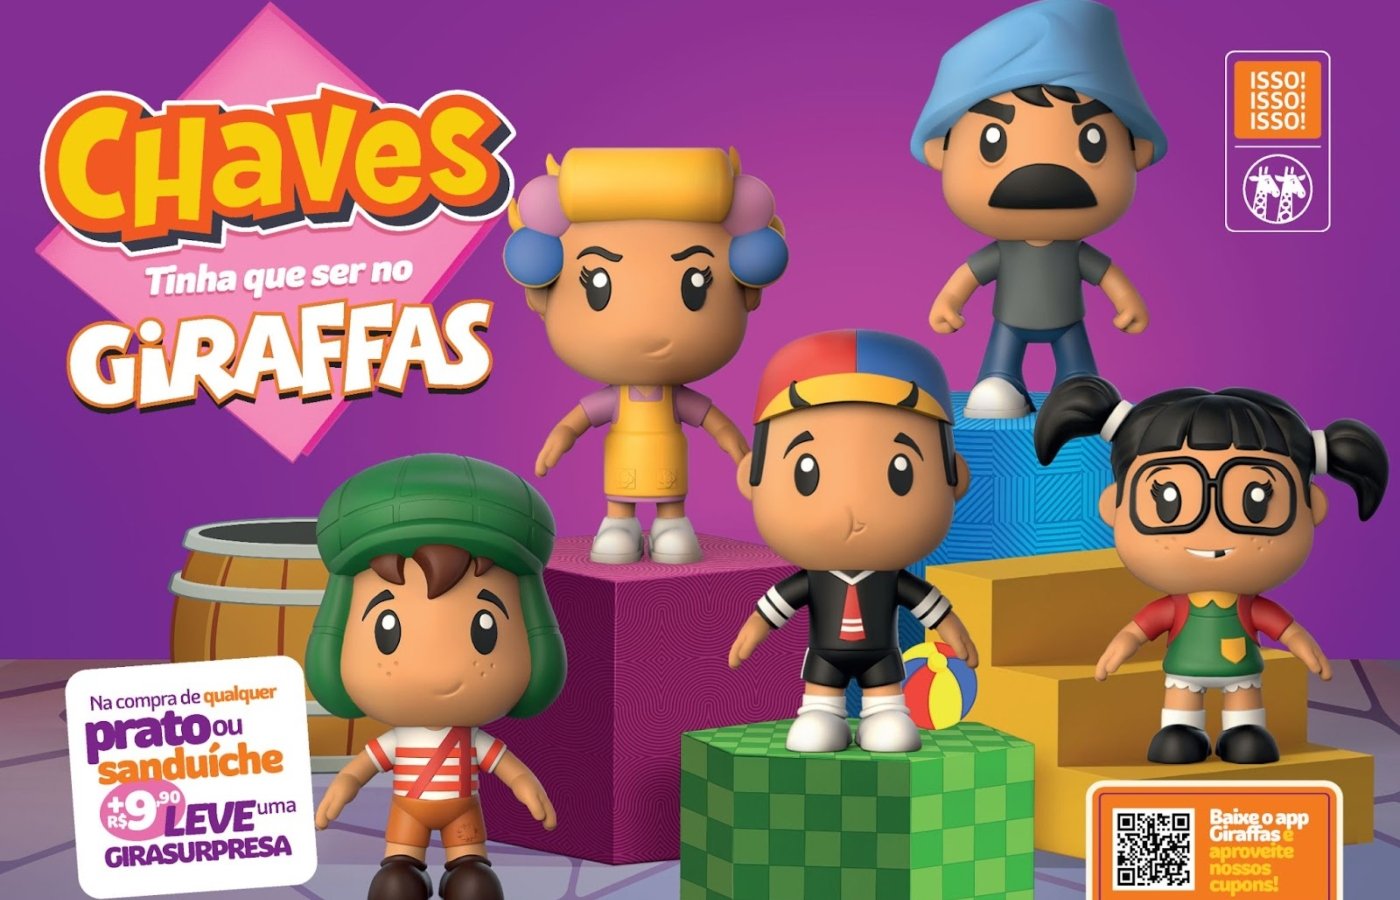 Giraffas lança bonecos do Chaves e eleva nostalgia: fãs poderão colecionar miniaturas